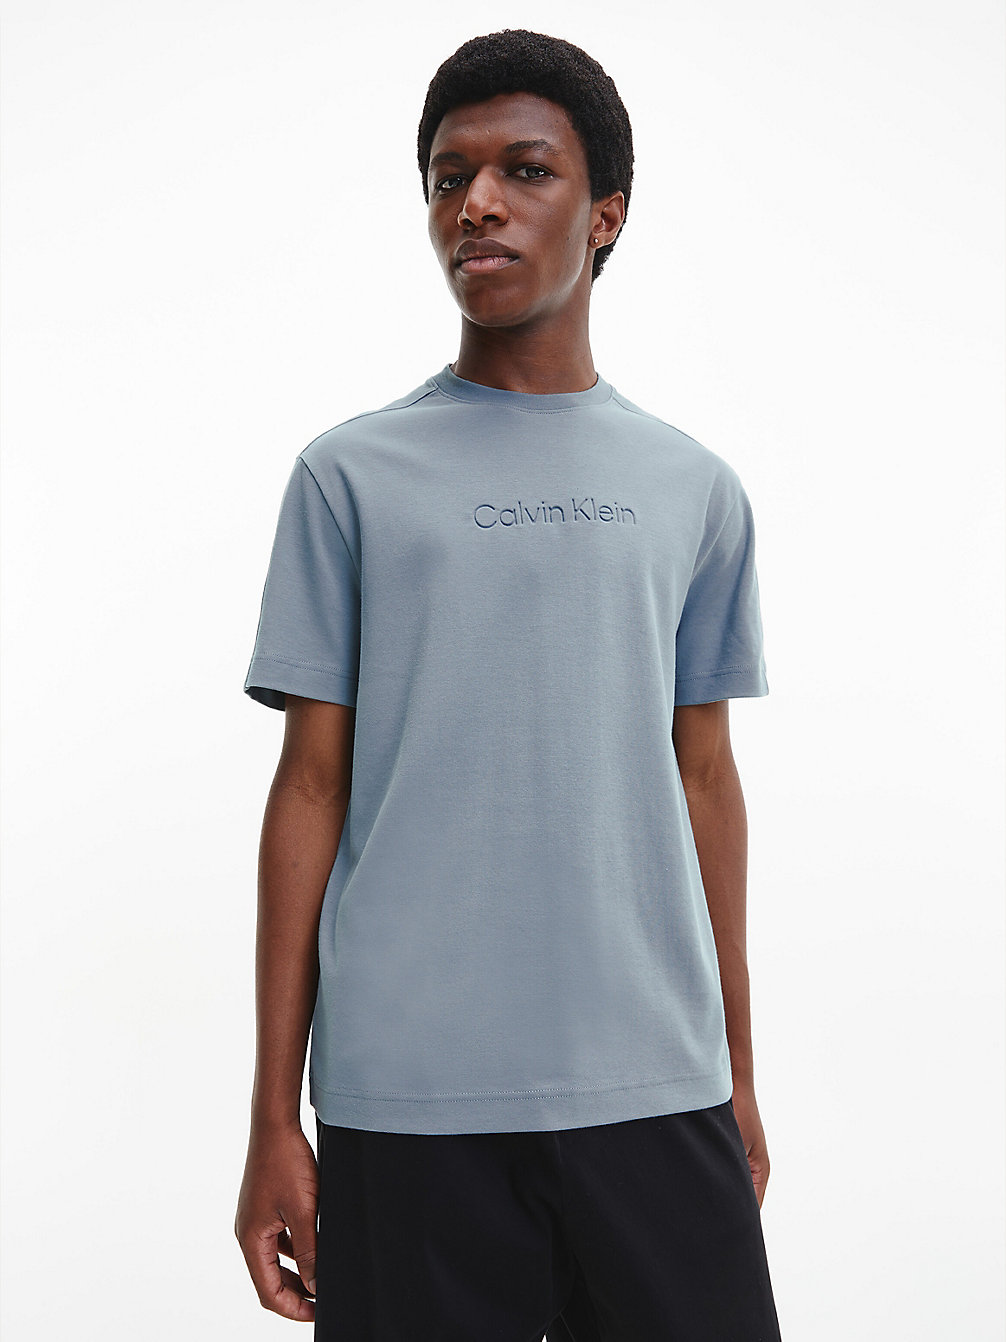 GREY TAR > Relaxtes T-Shirt Aus Bio-Baumwolle > undefined Herren - Calvin Klein